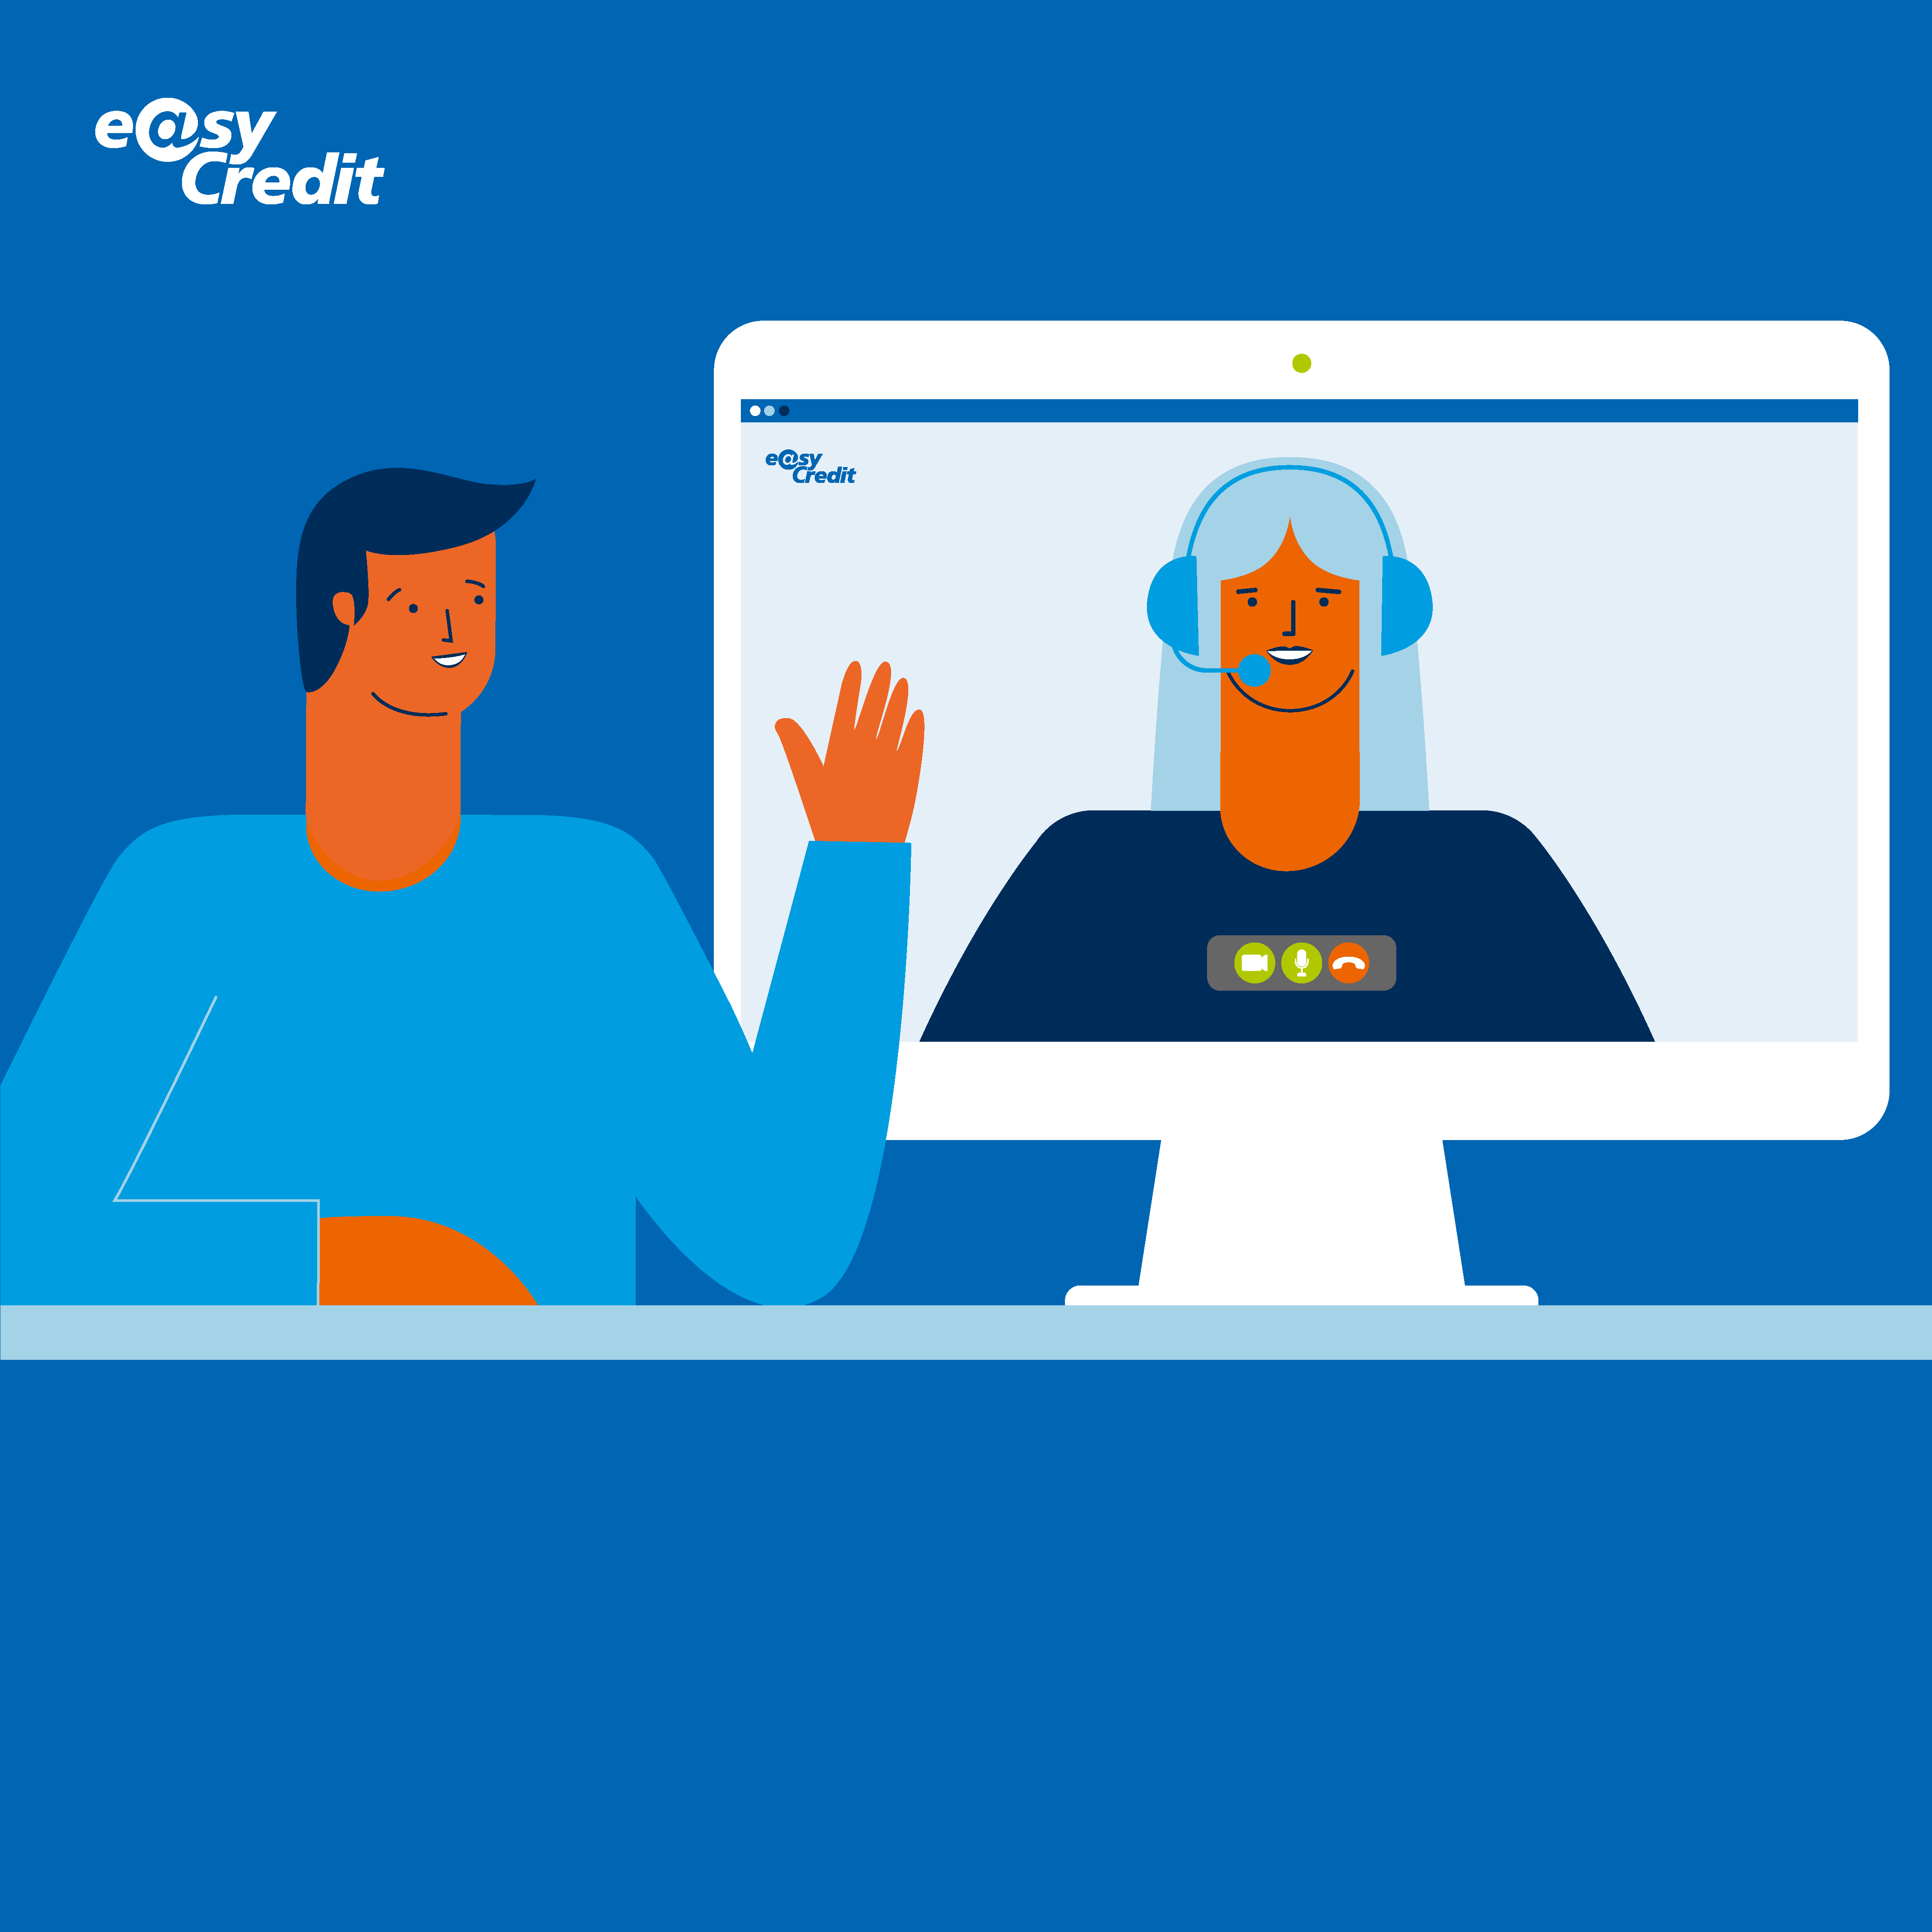 Computerbildschirm, auf der ein easyCredit-Mitarbeiter zu sehen ist, davor ein potenzieller Kunde – beide lächeln sich an / winken sich zu.